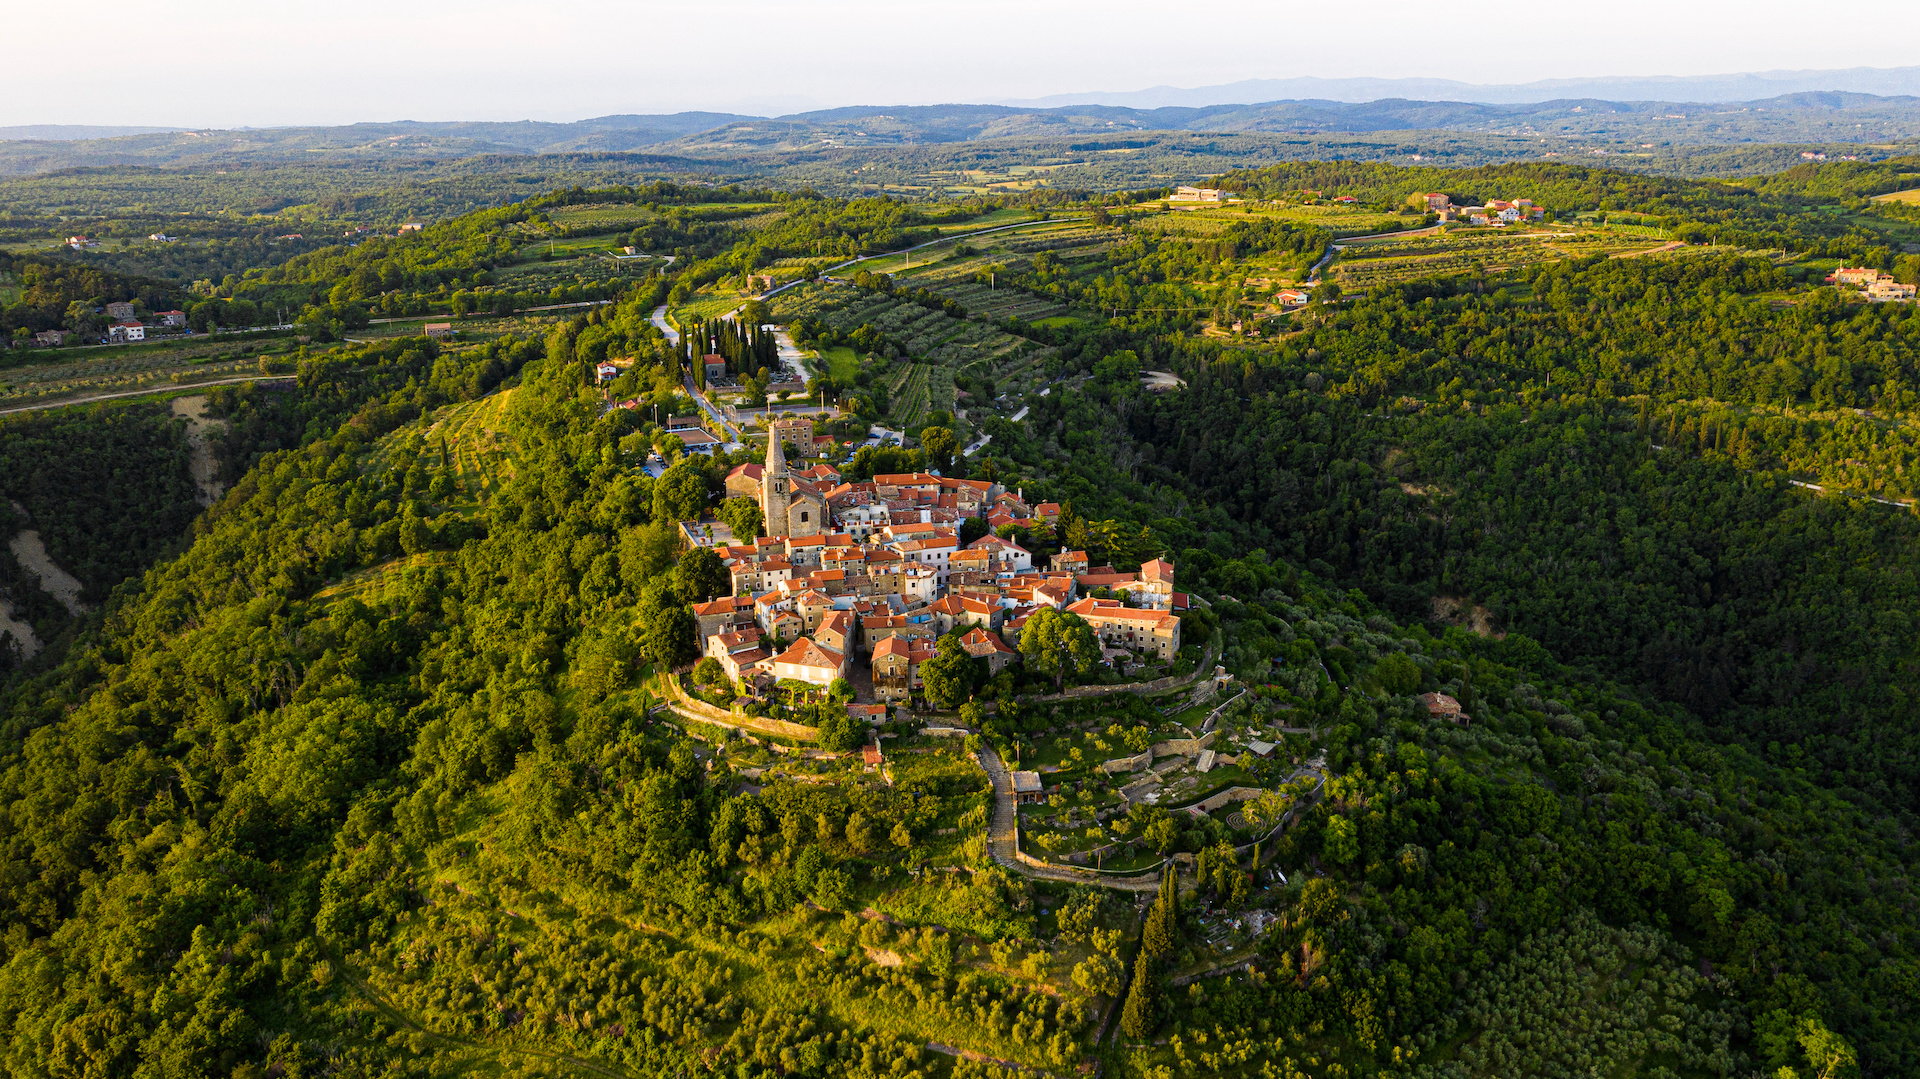 Grožnjan von oben: Rund um den malerischen Ort lockt die weite der wunderschönen Landschaft Istriens